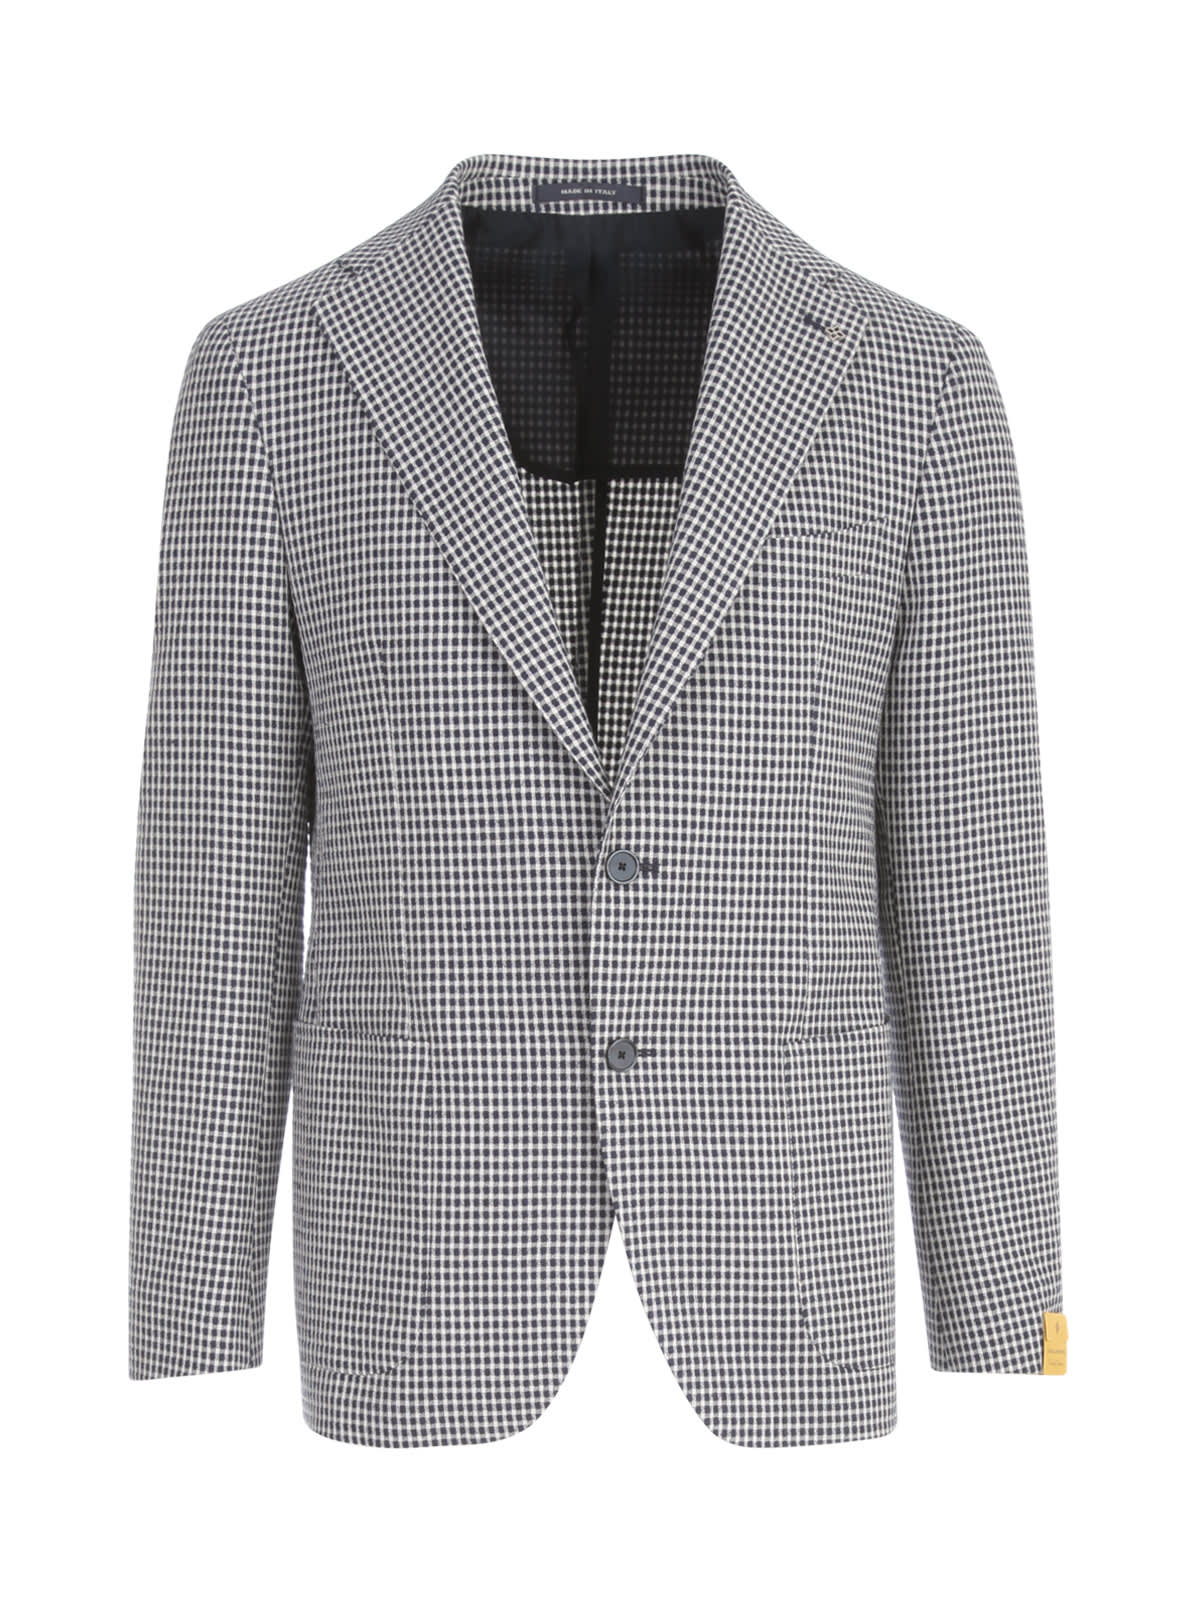 Tagliatore Cotton Linen Microchecked Jacket